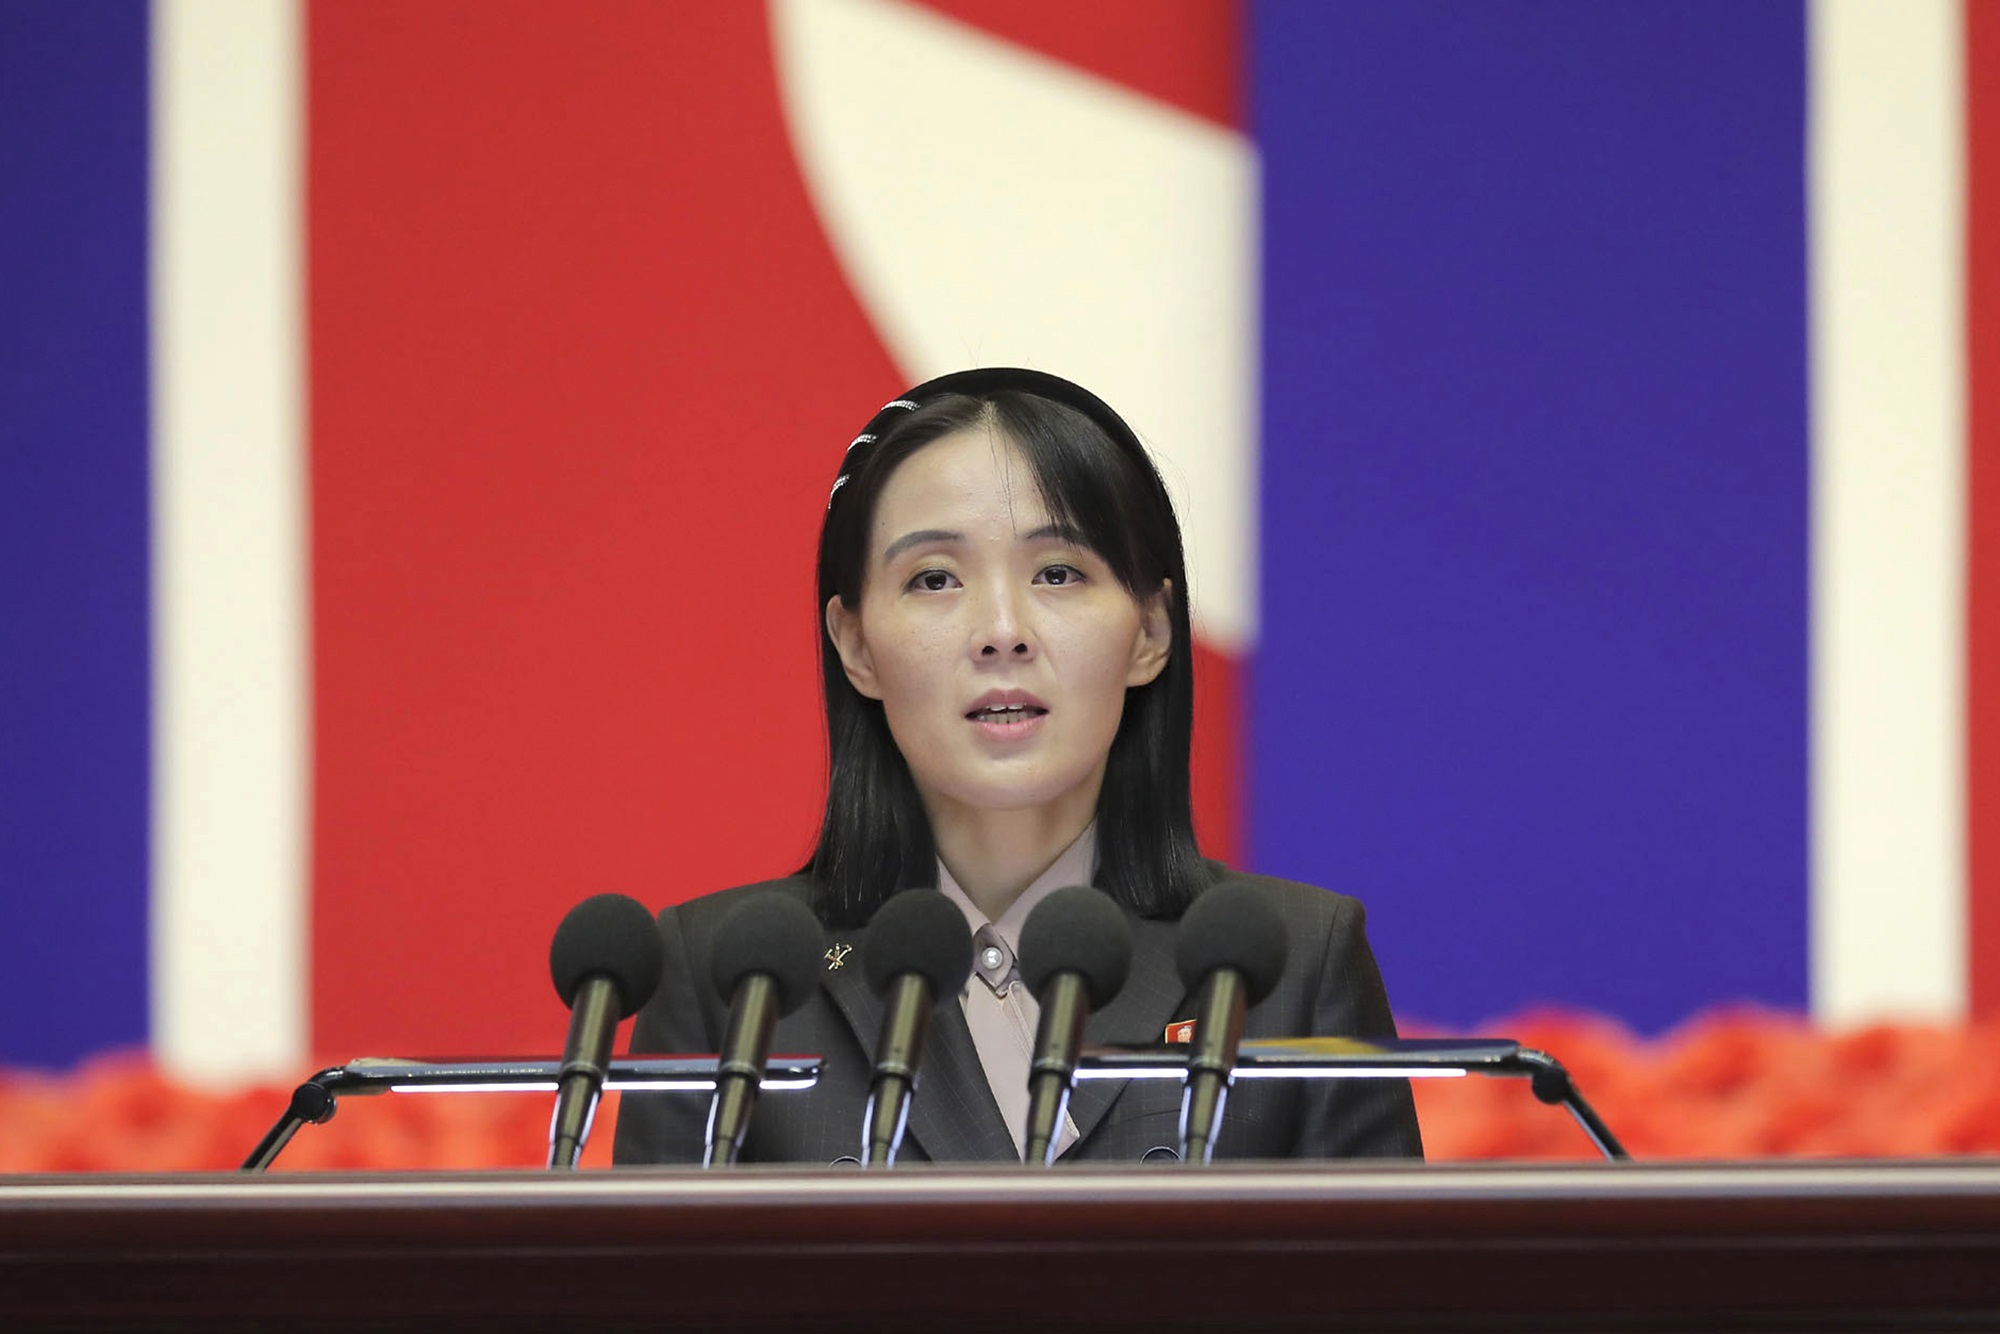 Β. Κορέα: “Όχι” στην πρόταση της Ν. Κορέας για βοήθεια με αντάλλαγμα την αποπυρηνικοποίηση